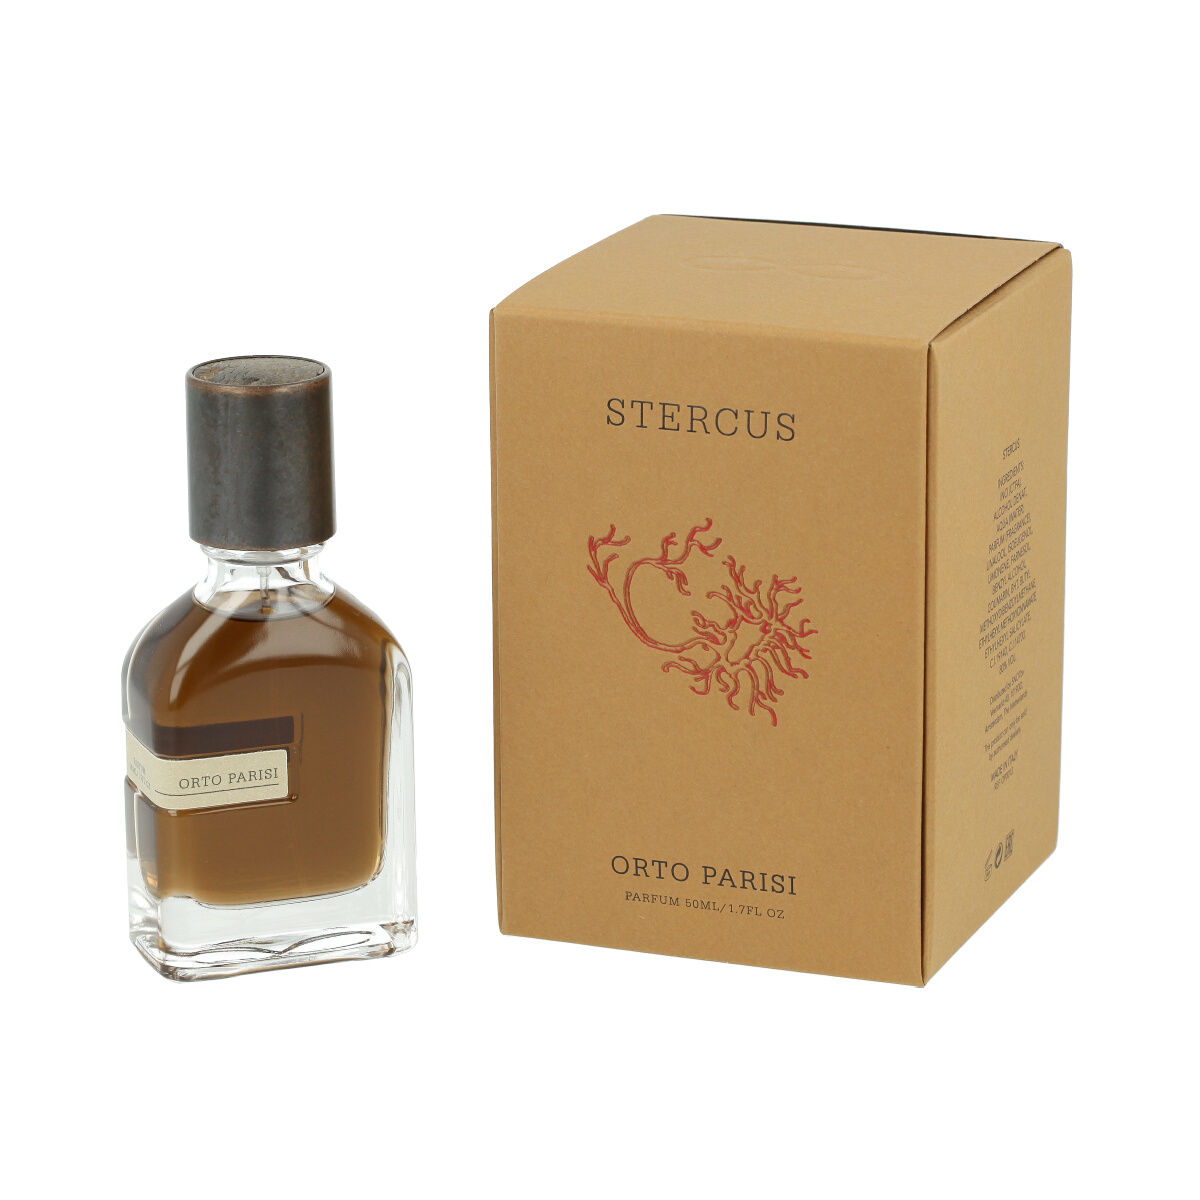 Orto Parisi Stercus Parfum 5 ml NIŠINIAI kvepalų mėginukas (atomaizeris) Unisex Parfum